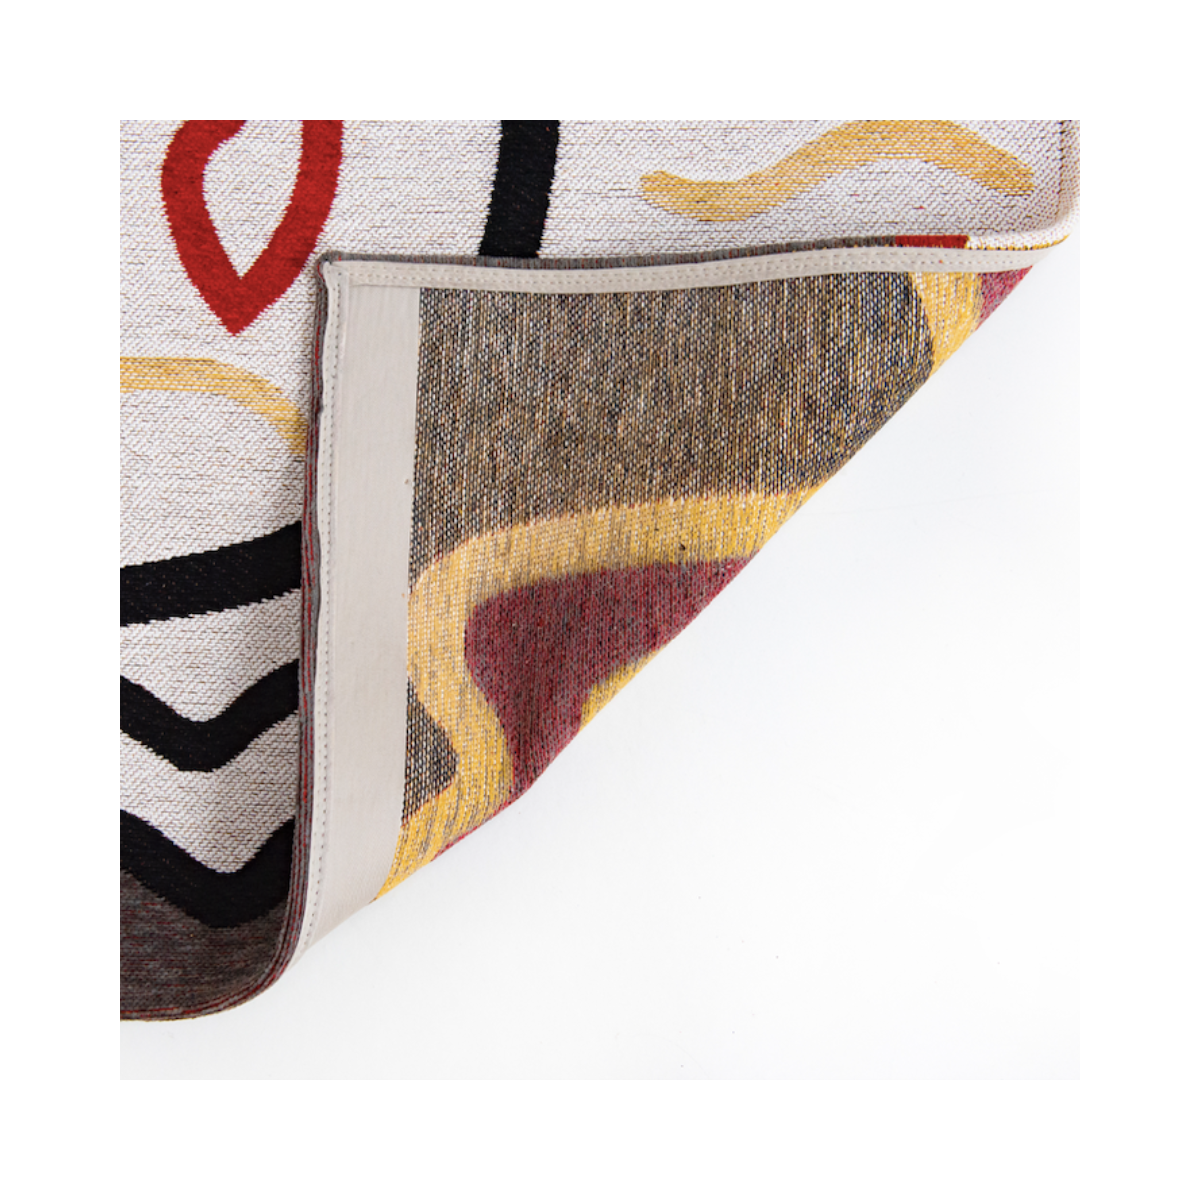 Gelerie Dorado: Picasso Teppich in 170x240cm